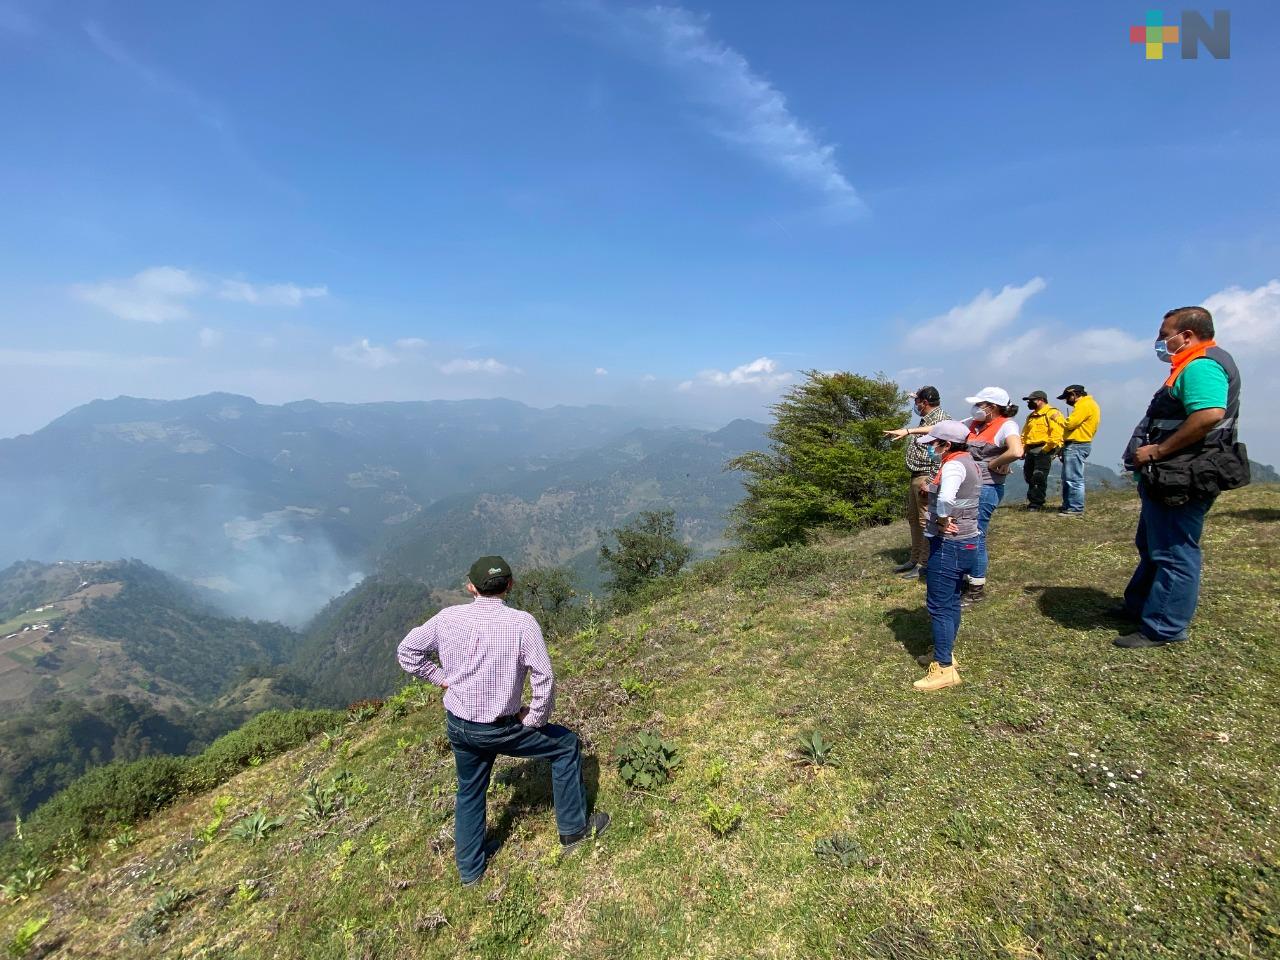 Se atendieron 6 incendios forestales en Las Vigas durante esta semana